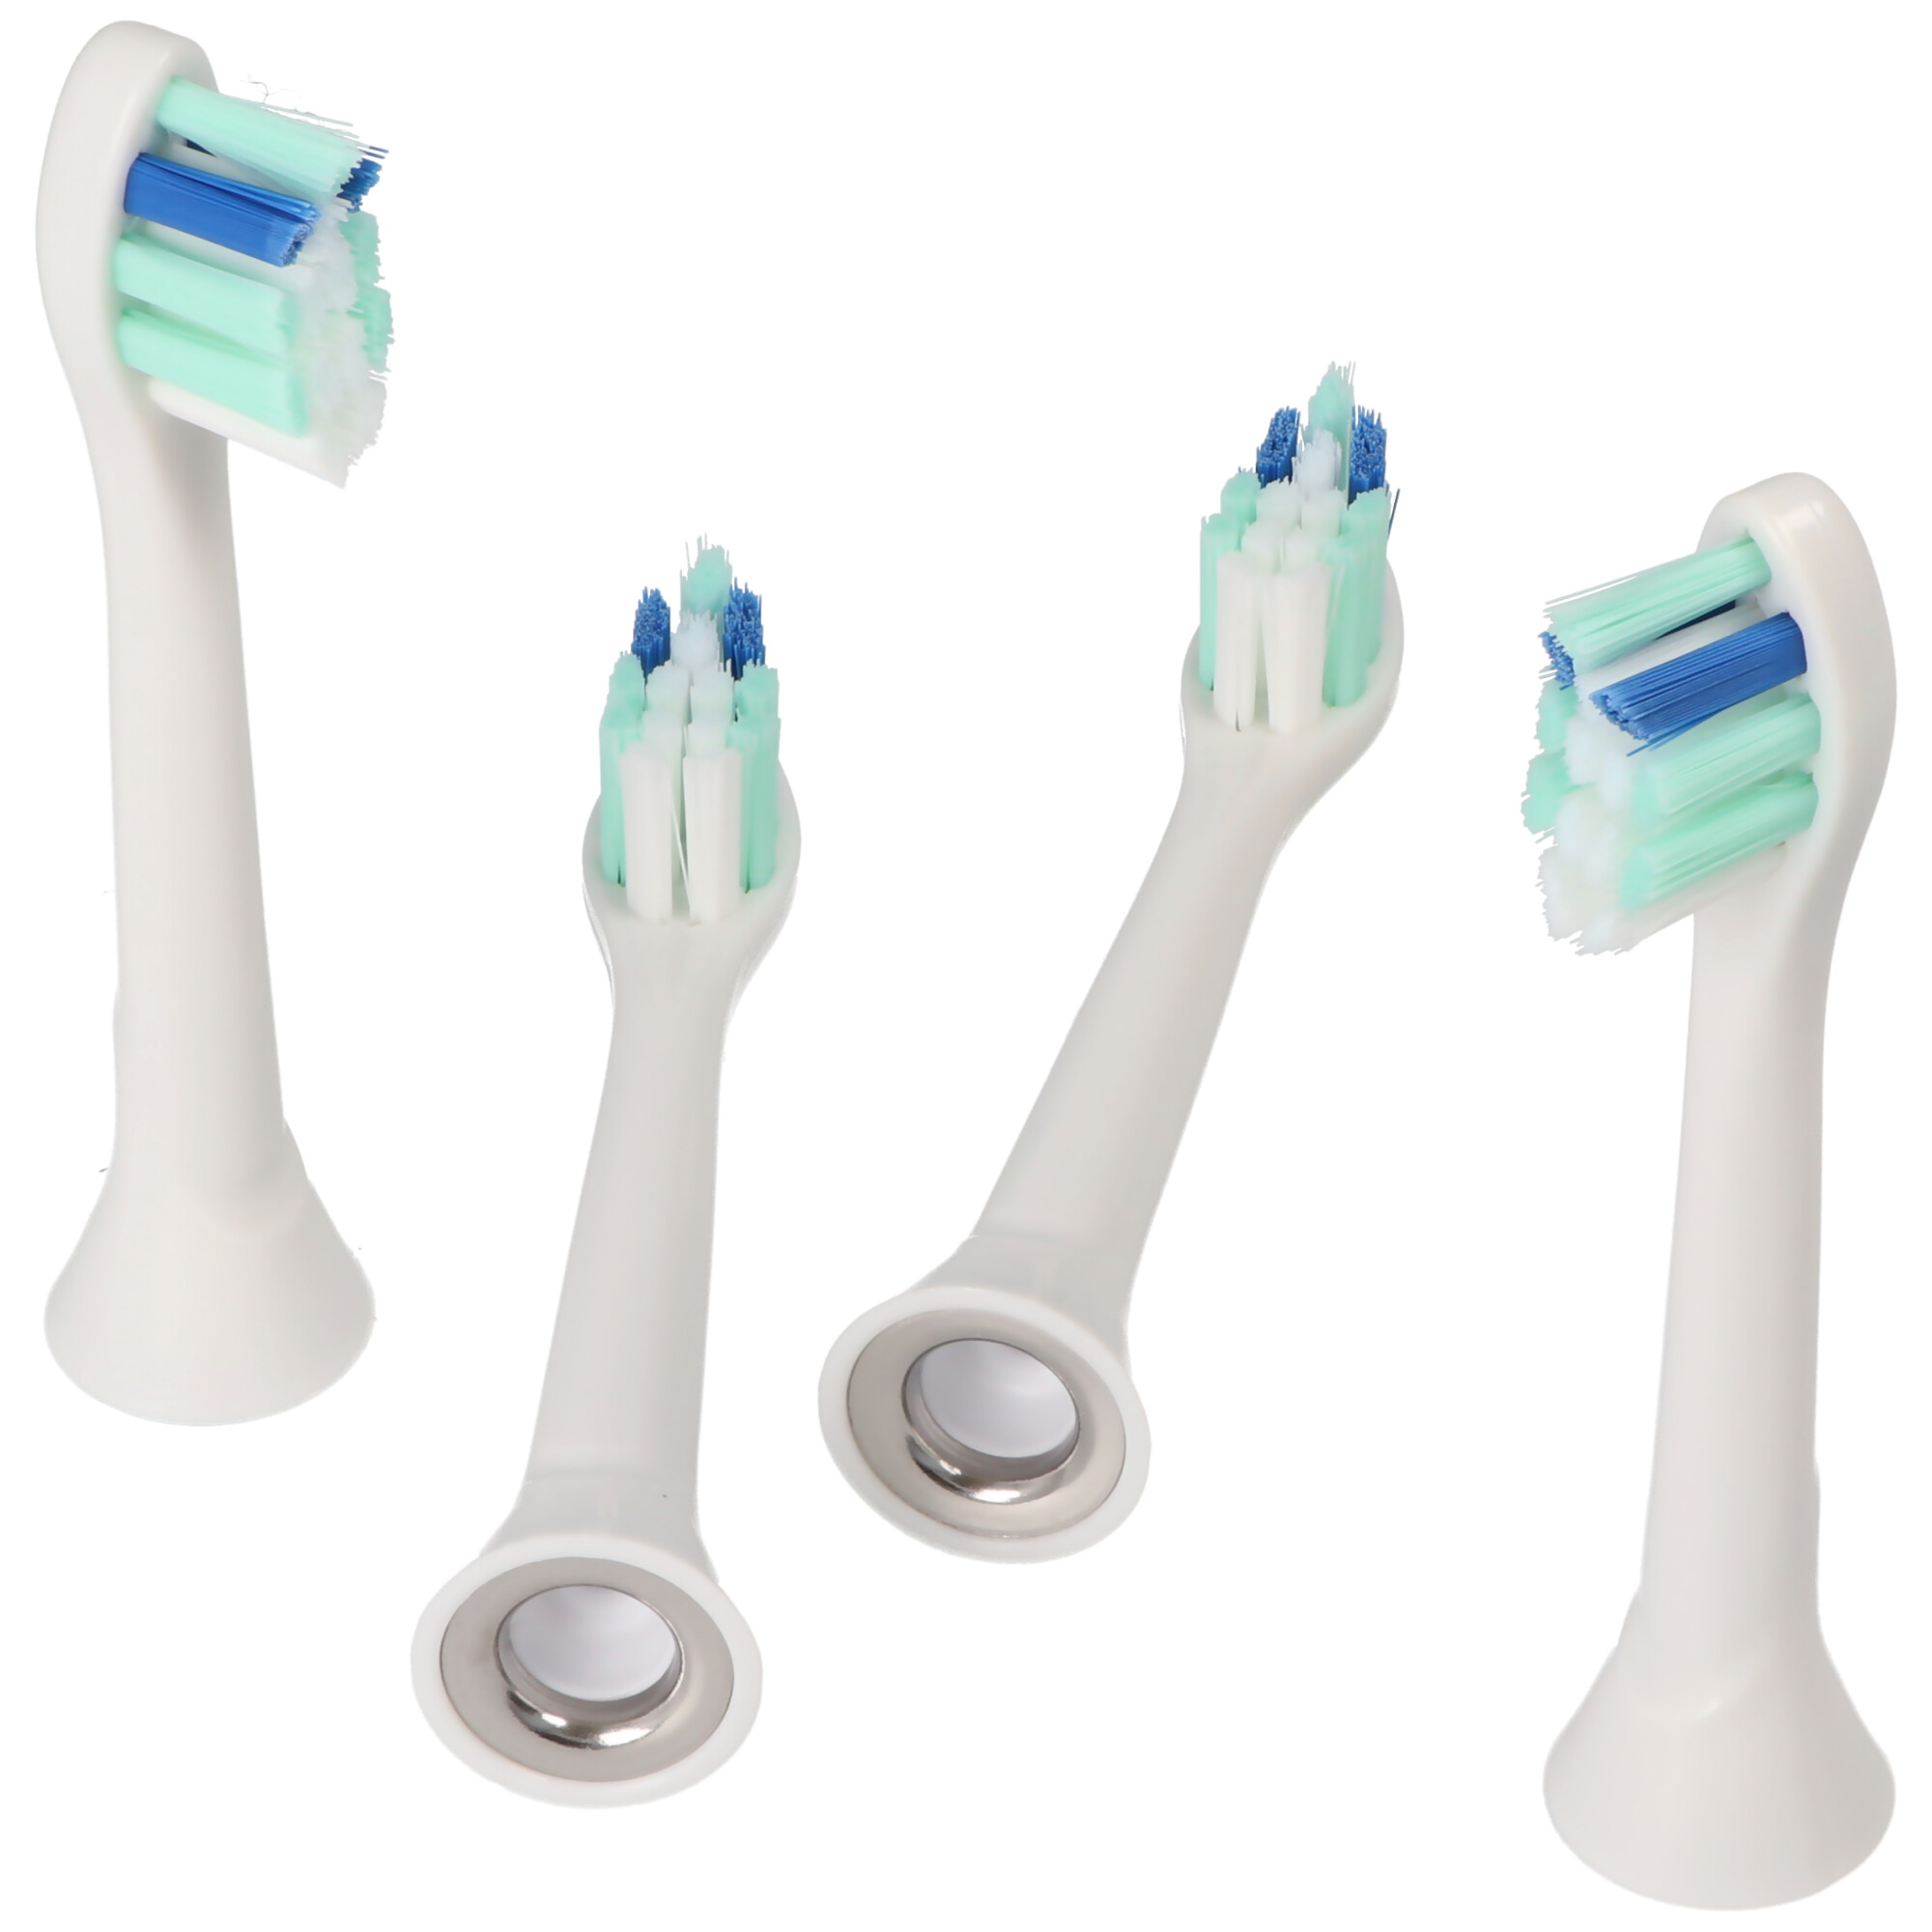 4 Stück Gum Care Cleaning Brush Ersatz-Zahnbürstenkopf für elektrische Zahnbürsten von Philips, passend z.B. für Philips HX3 HX6 HX8 HX9 Serie